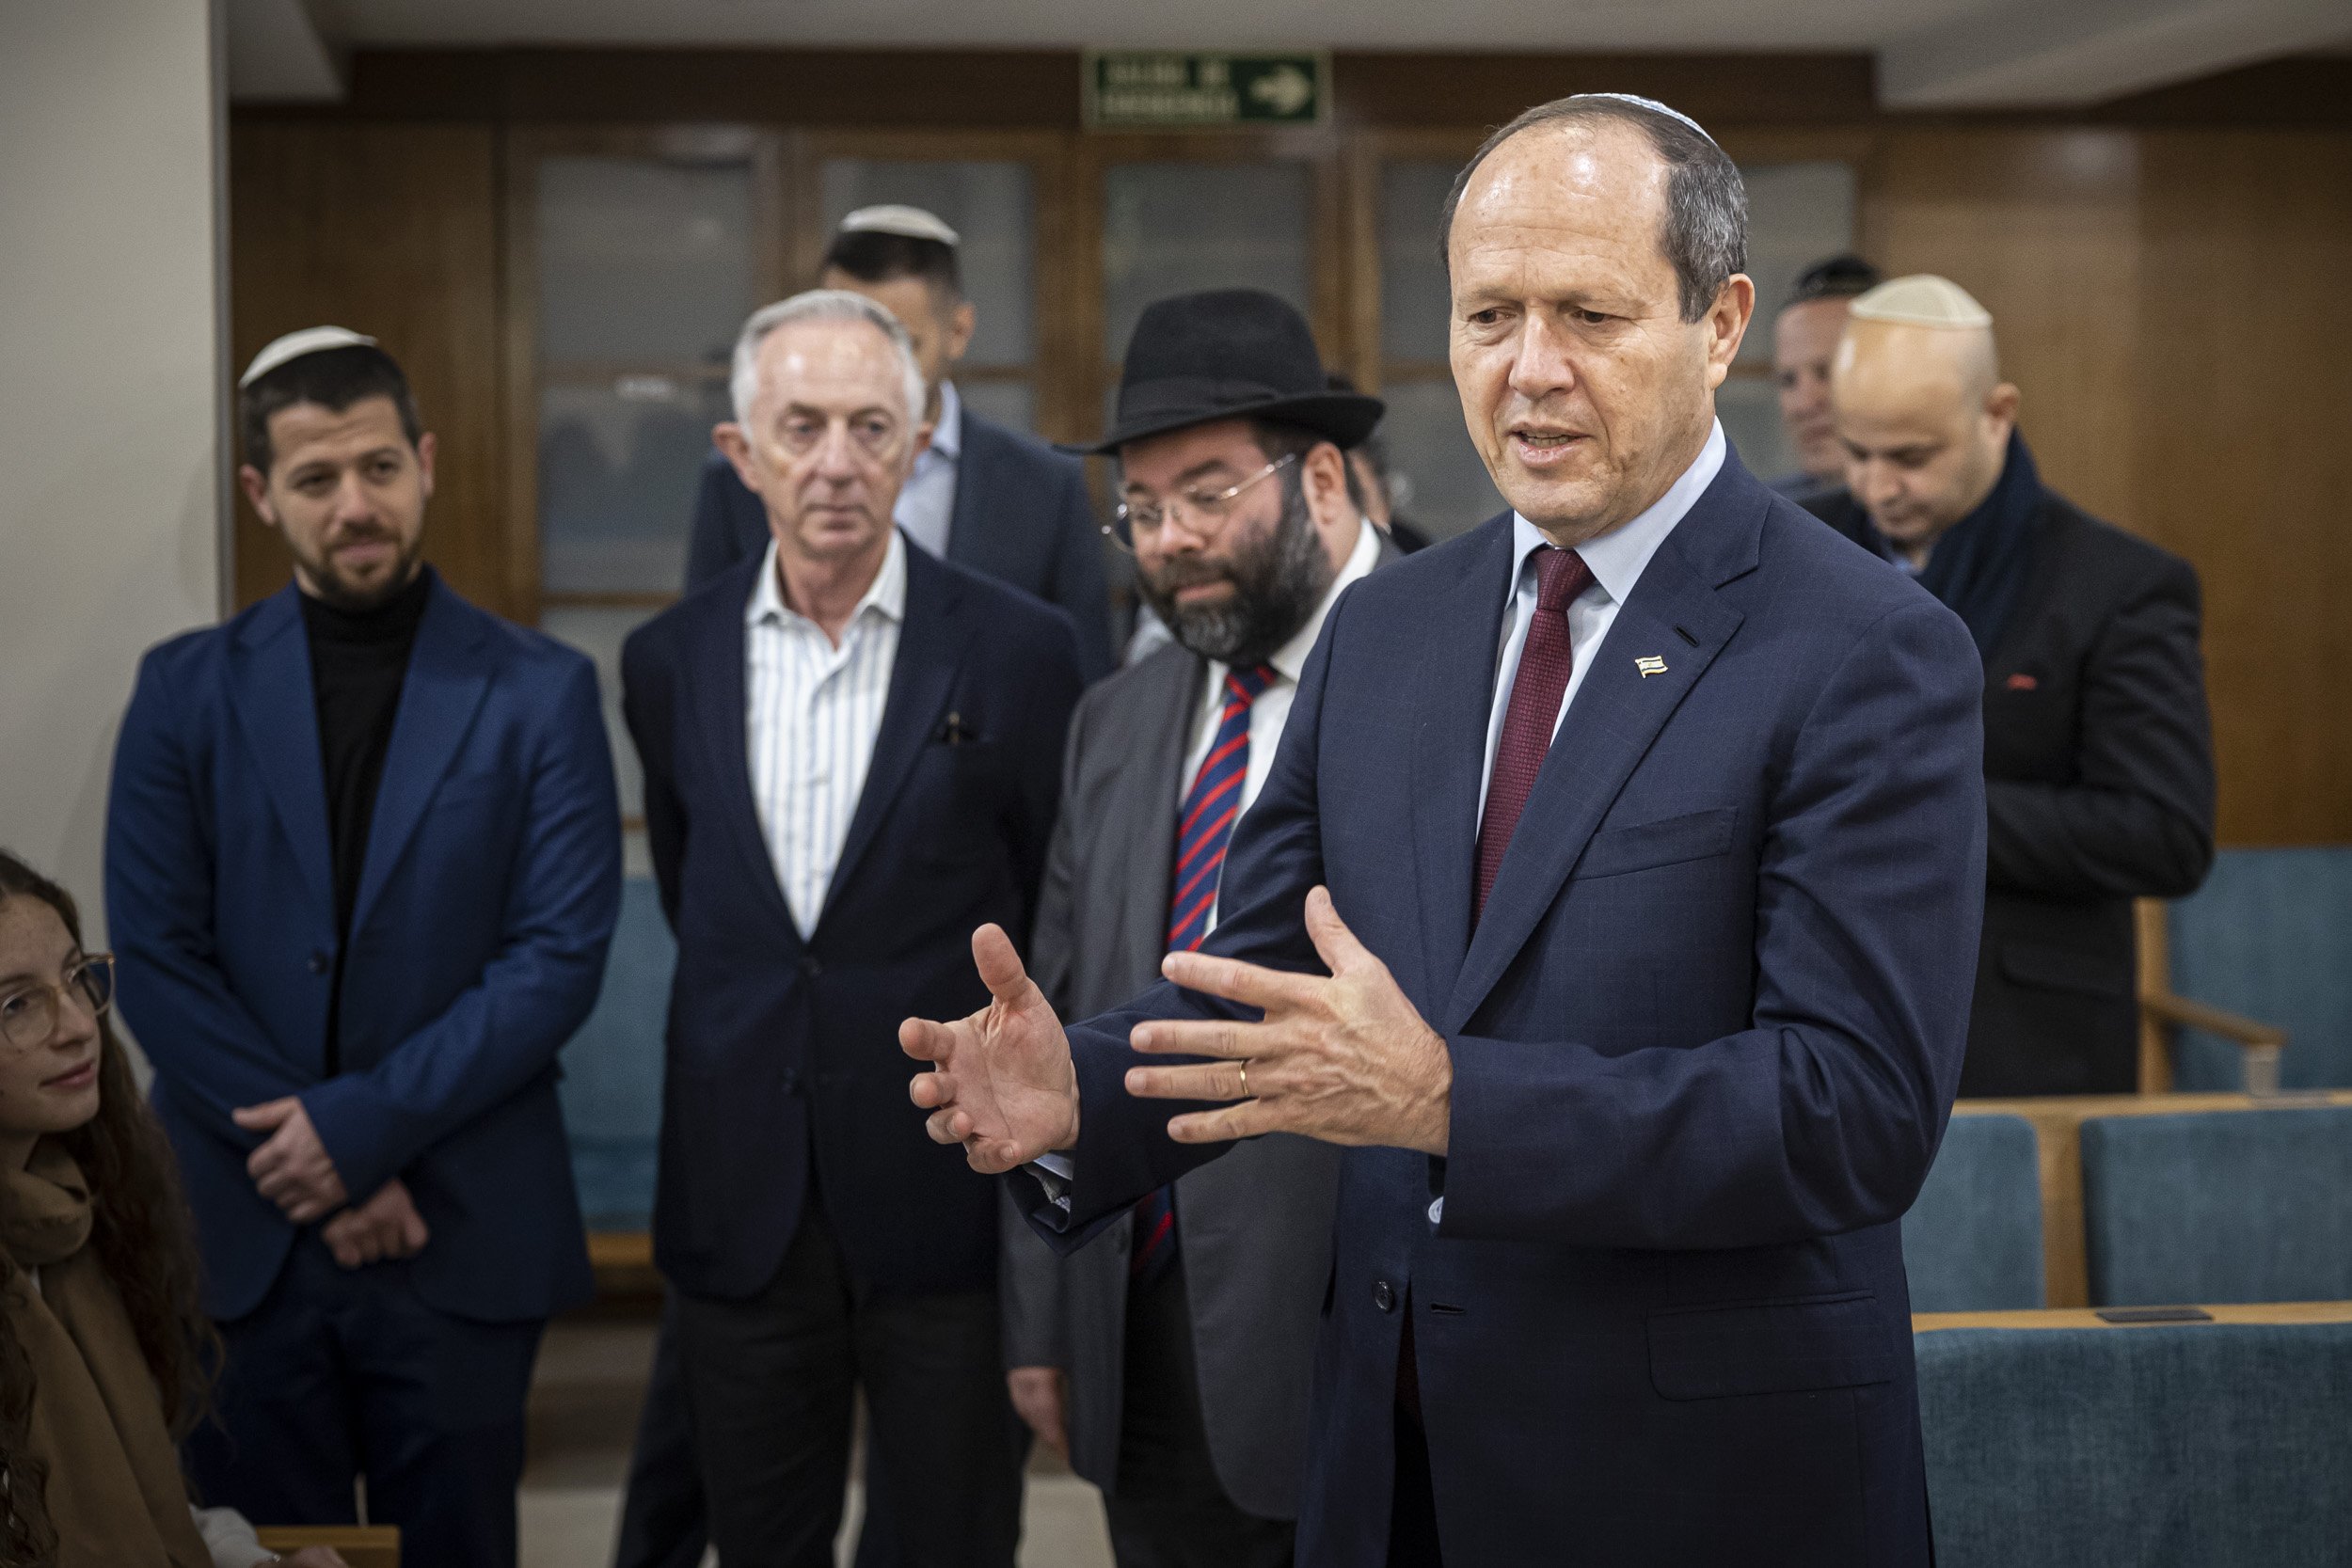 El ministre d'Economia d'Israel visita la comunitat jueva de Barcelona: "Les relacions es mantenen"